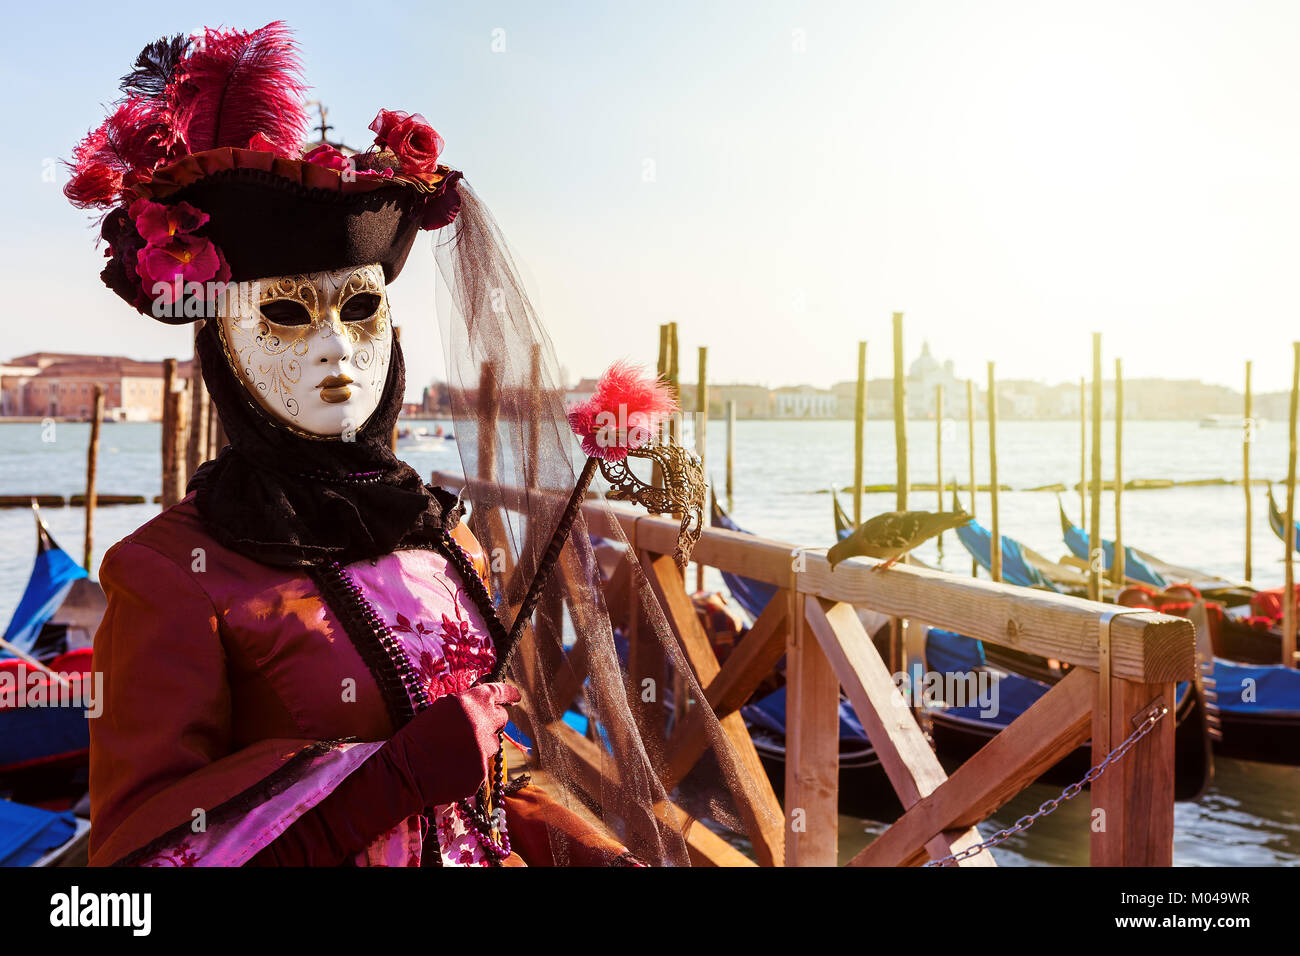 Venezia, Italia - MARZO 04, 2011: partecipante non identificato indossa i costumi e la maschera nella parte anteriore del canal grande durante il famoso Carnevale annuale. Foto Stock